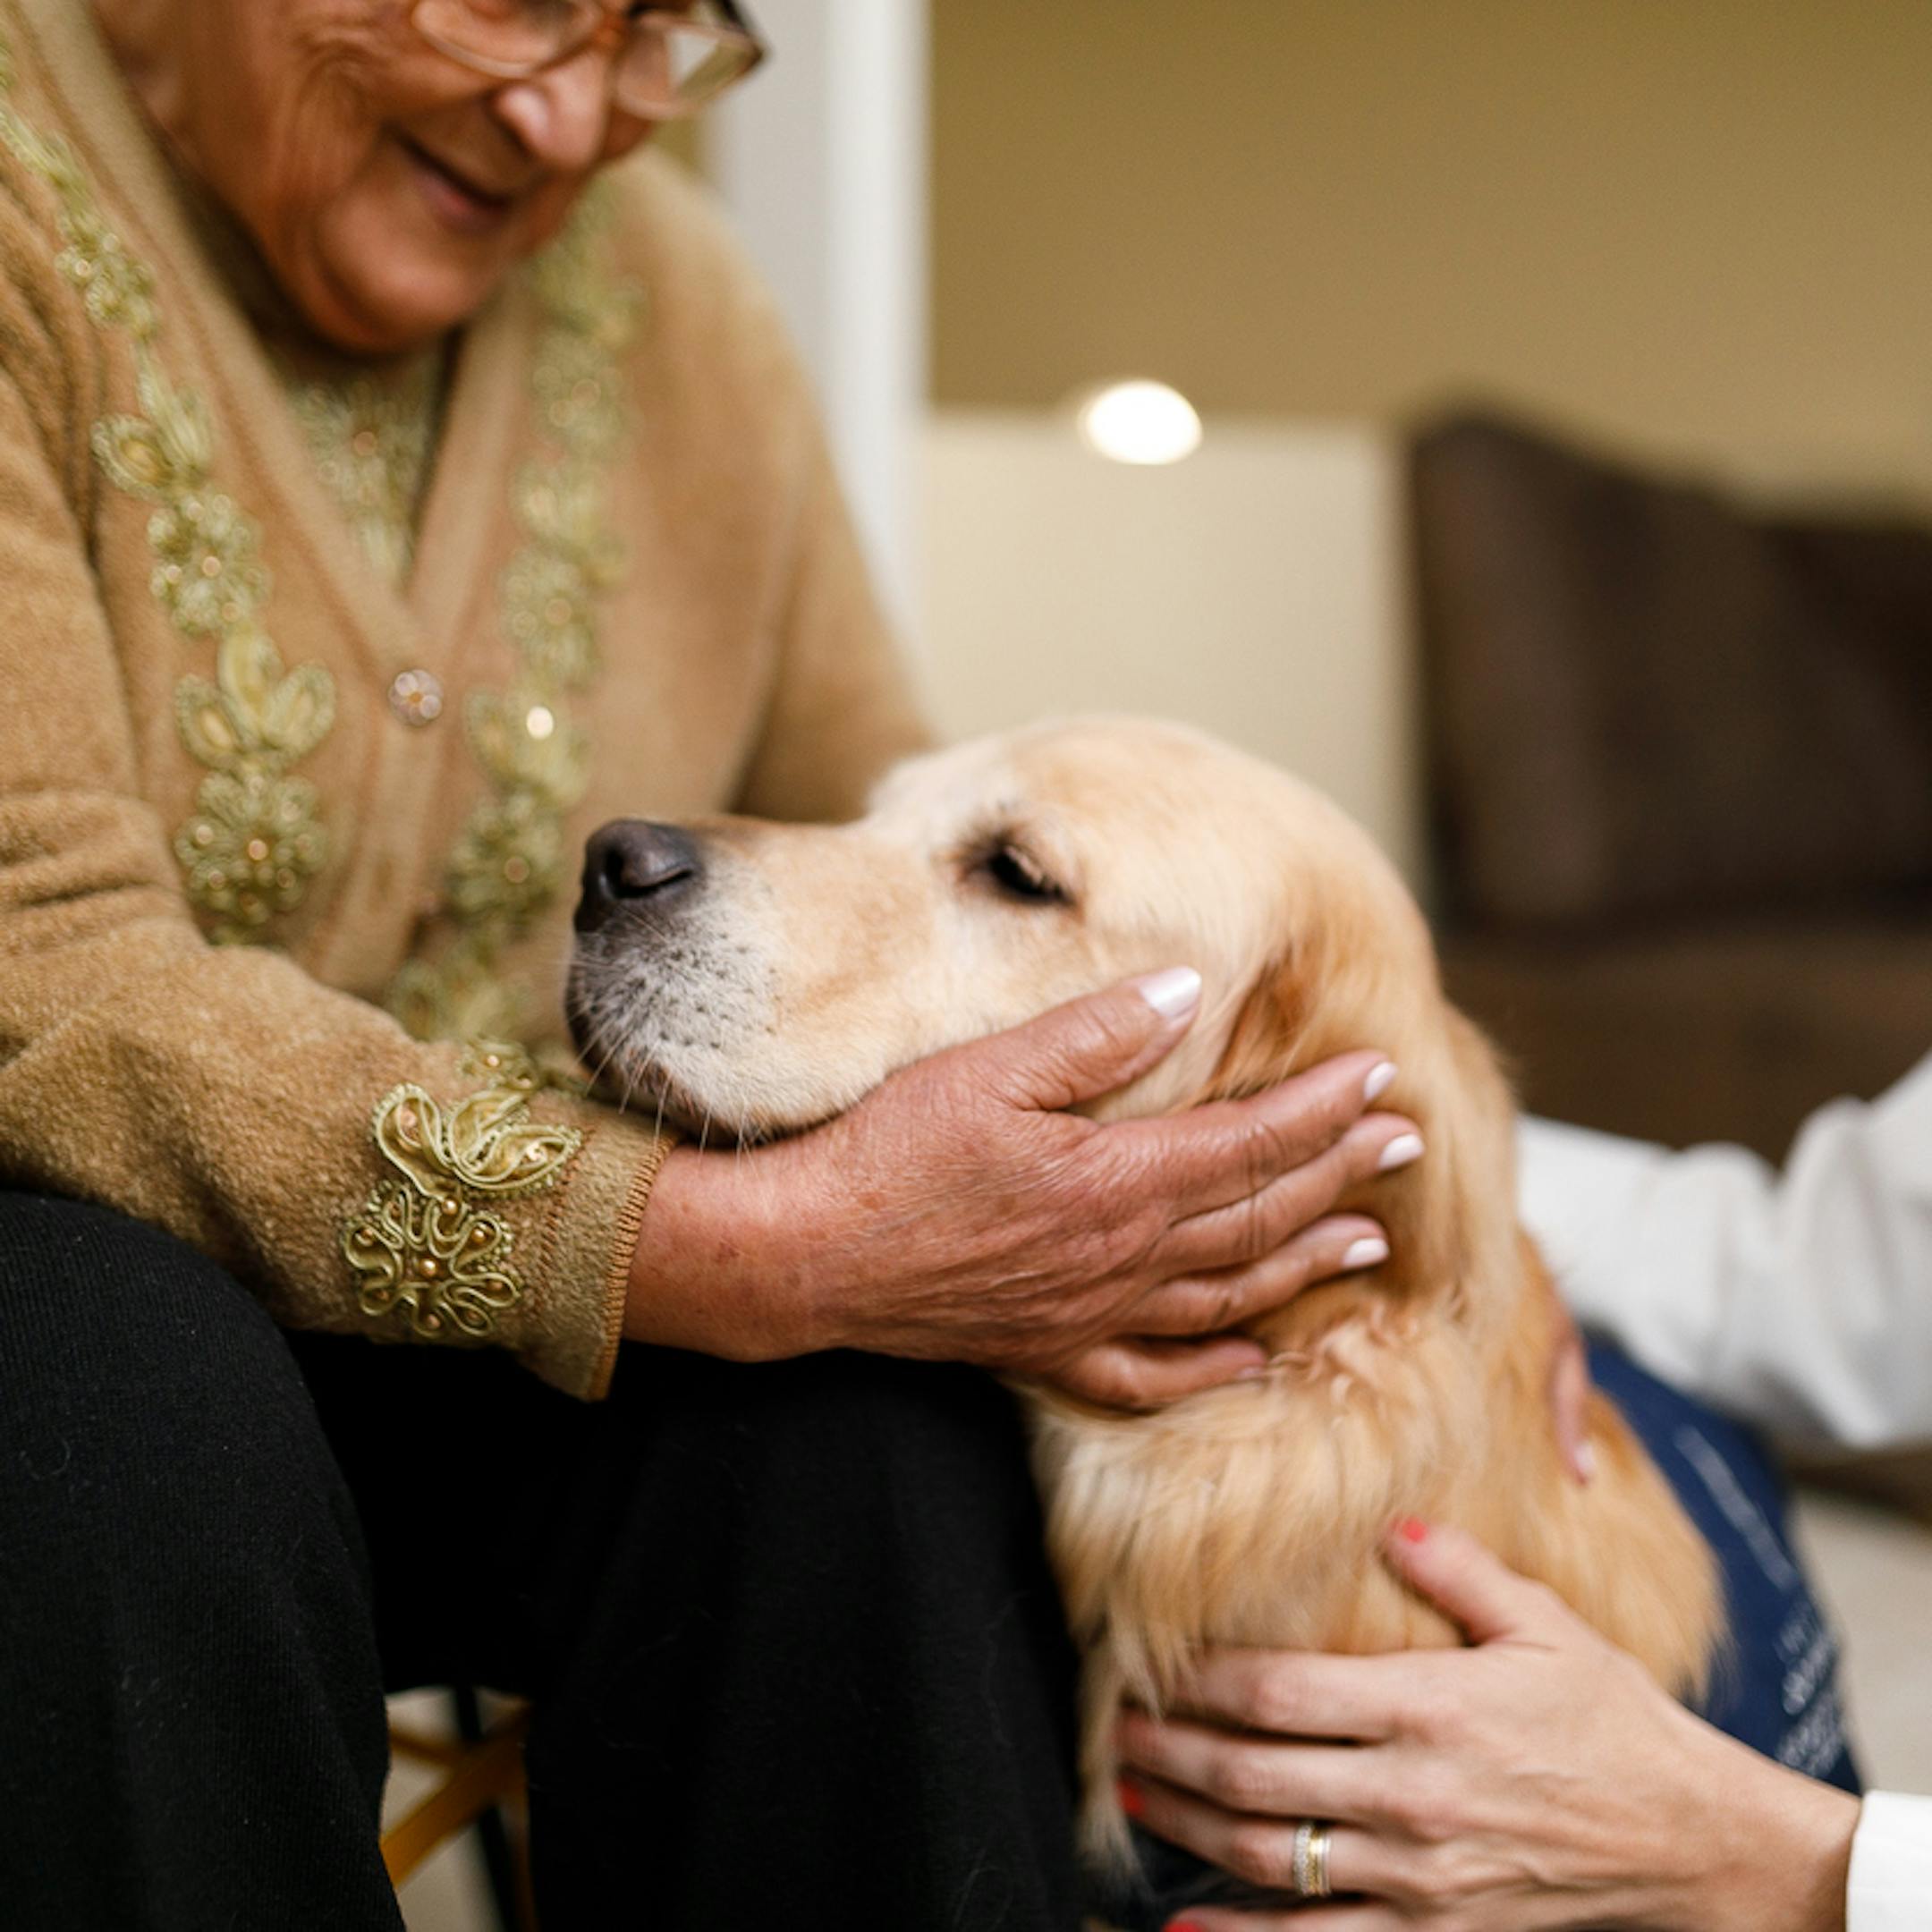 Thérapeute présentant un chien à une patiente